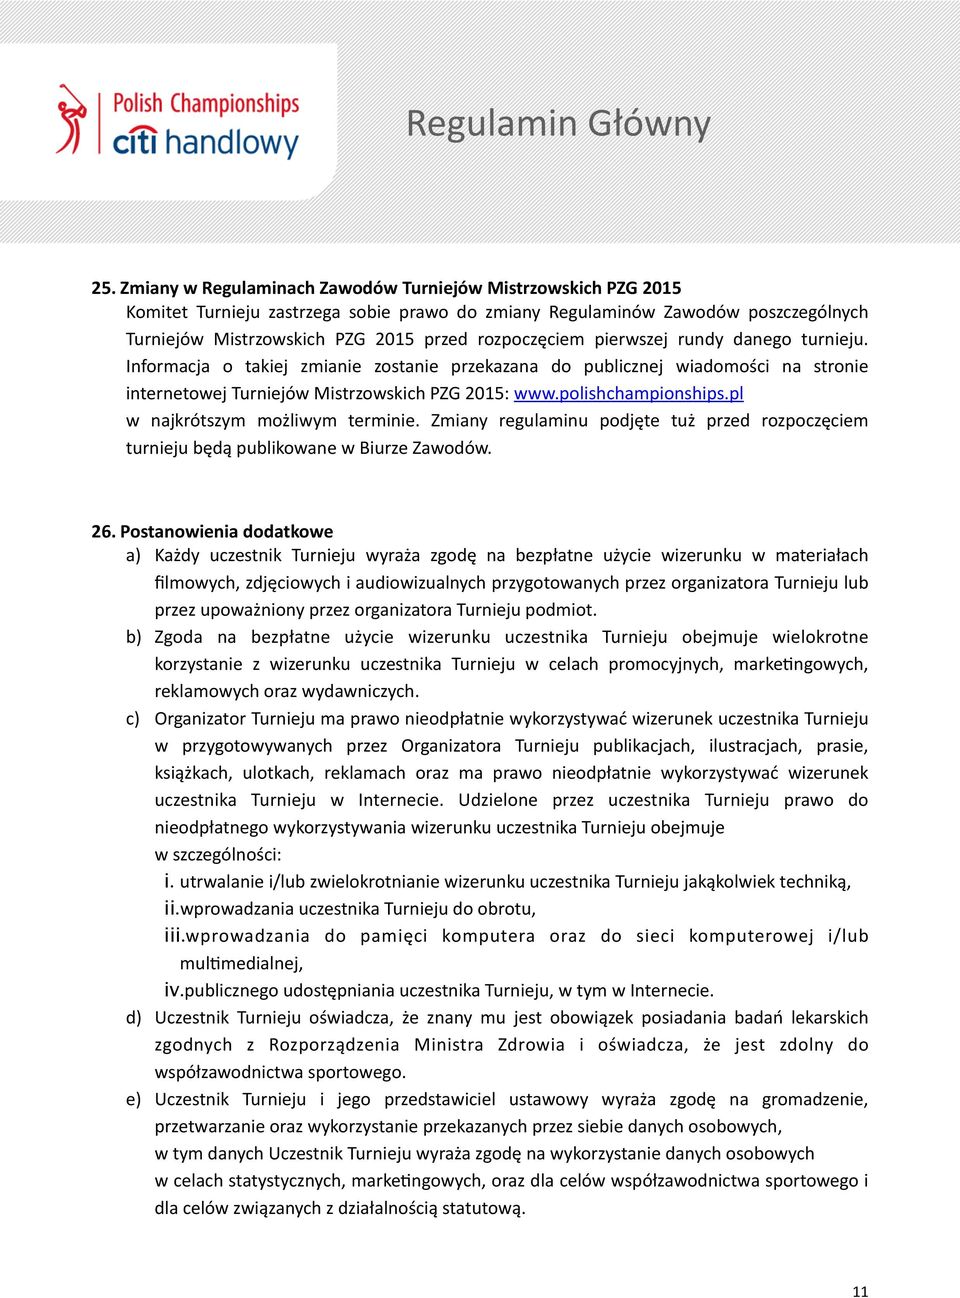 polishchampionships.pl w najkrótszym możliwym terminie. Zmiany regulaminu podjęte tuż przed rozpoczęciem turnieju będą publikowane w Biurze Zawodów. 26.